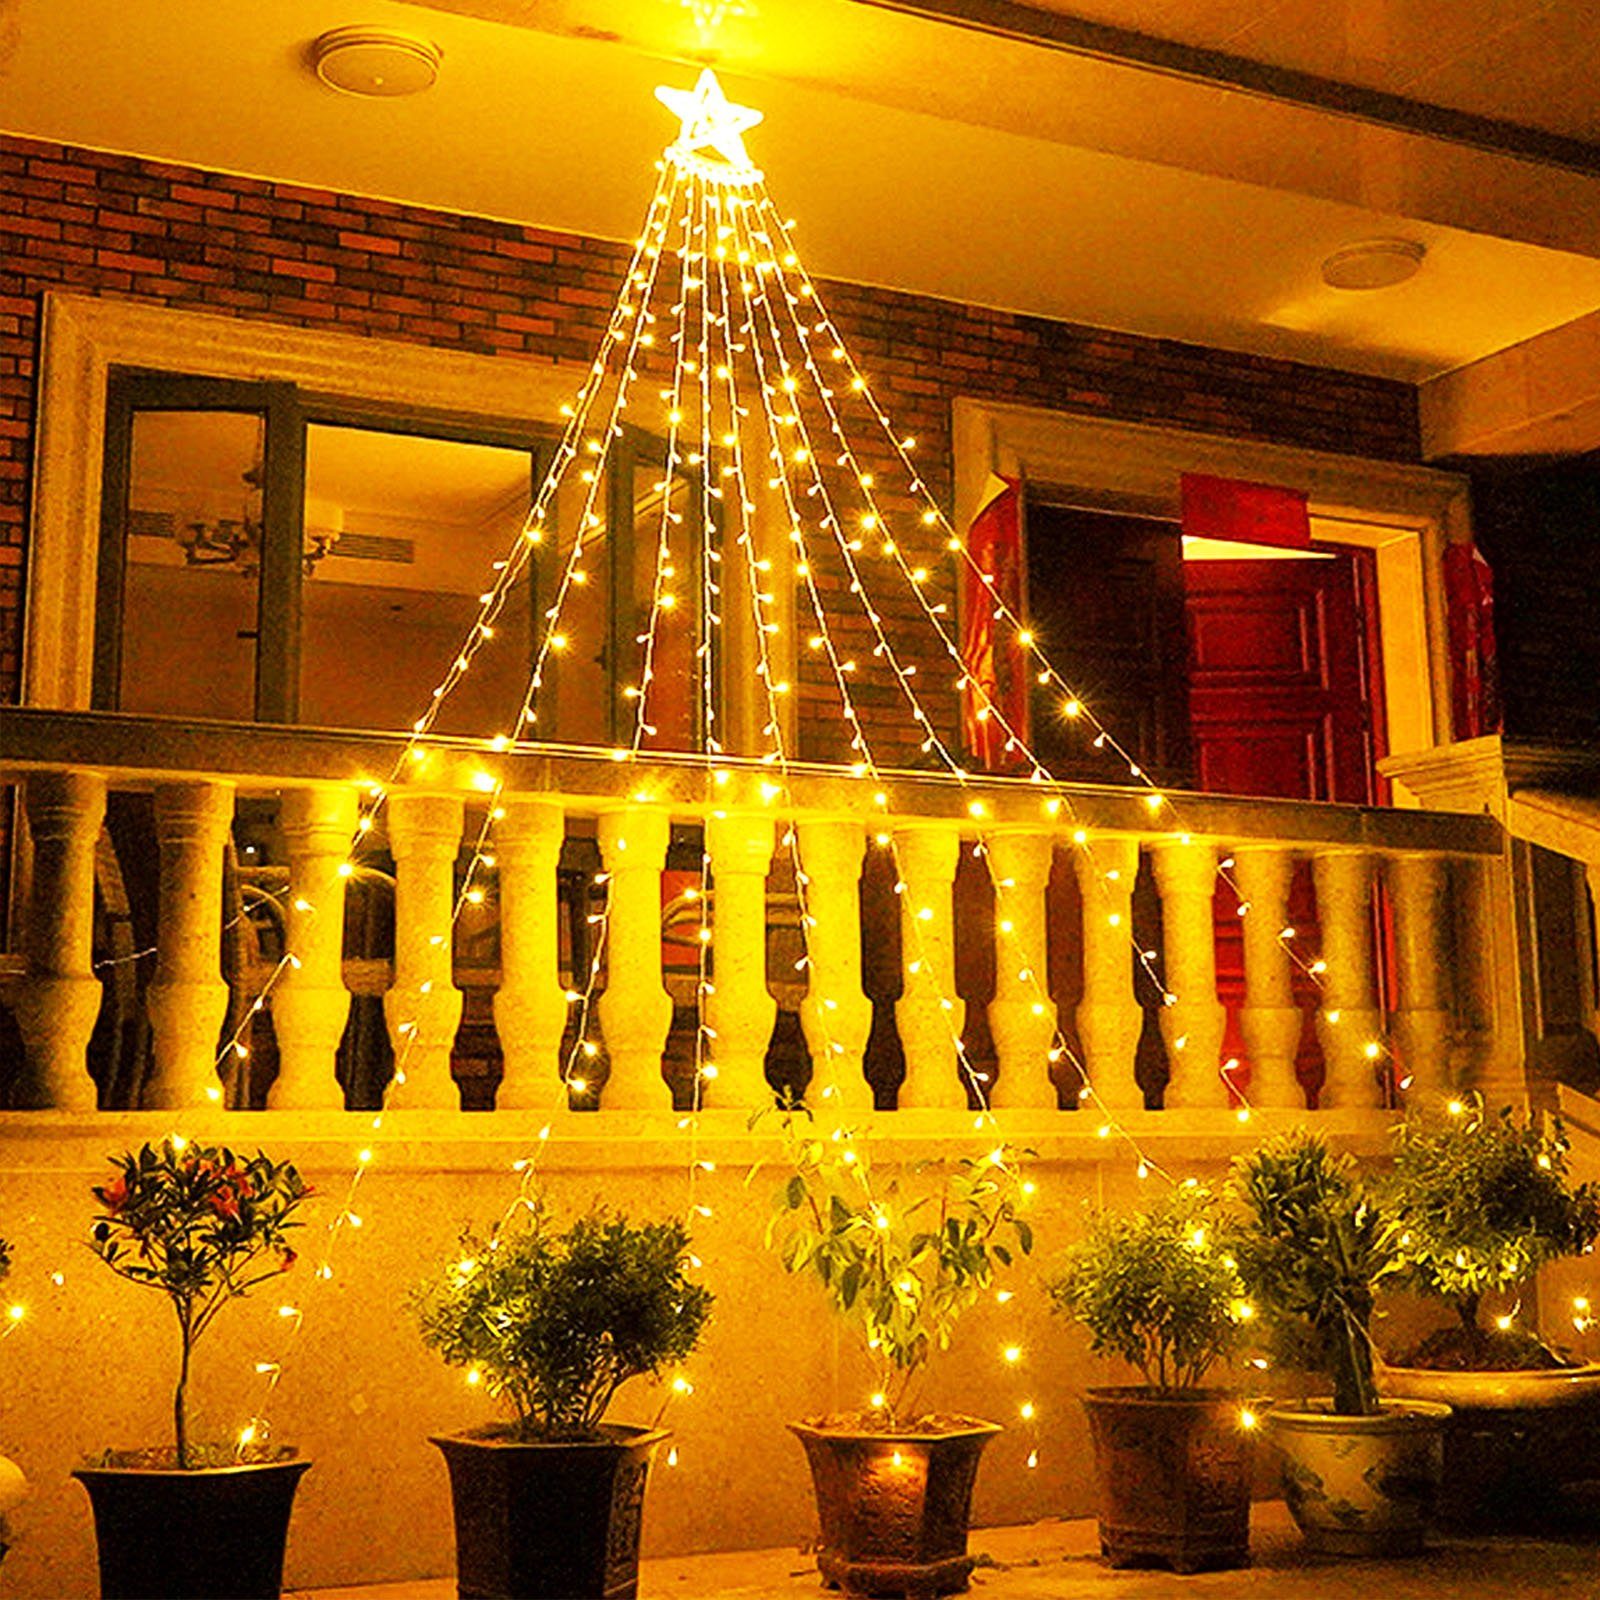 LETGOSPT LED-Lichterkette 350 LEDs Wasserfall Lichterkette mit ein großer Stern, 8 Modi,230V, IP44 Wasserfall Fee Lichter Weihnachts Dekoration Warmweiß | Lichterketten